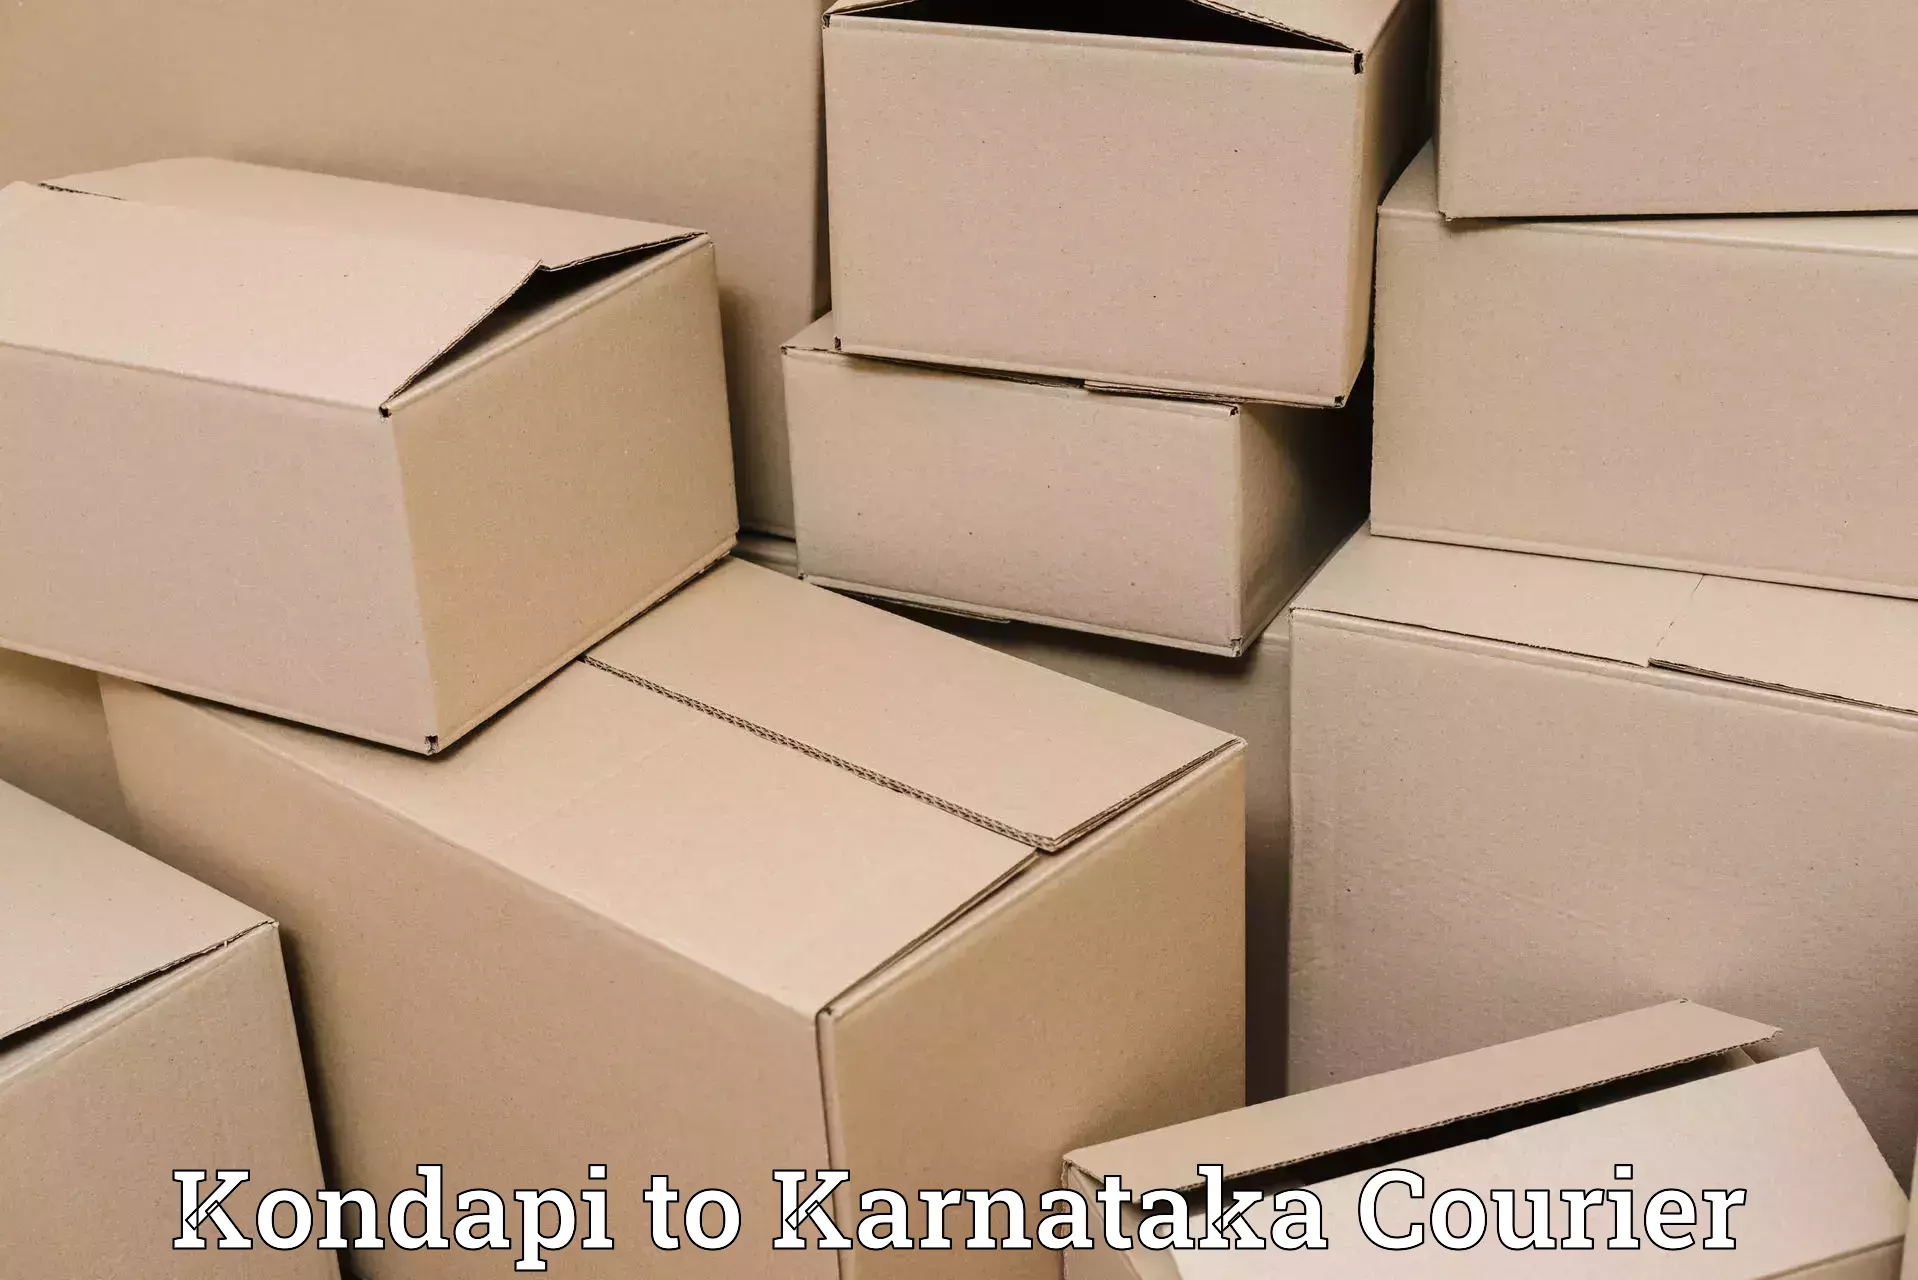 Seamless shipping experience Kondapi to Tiptur